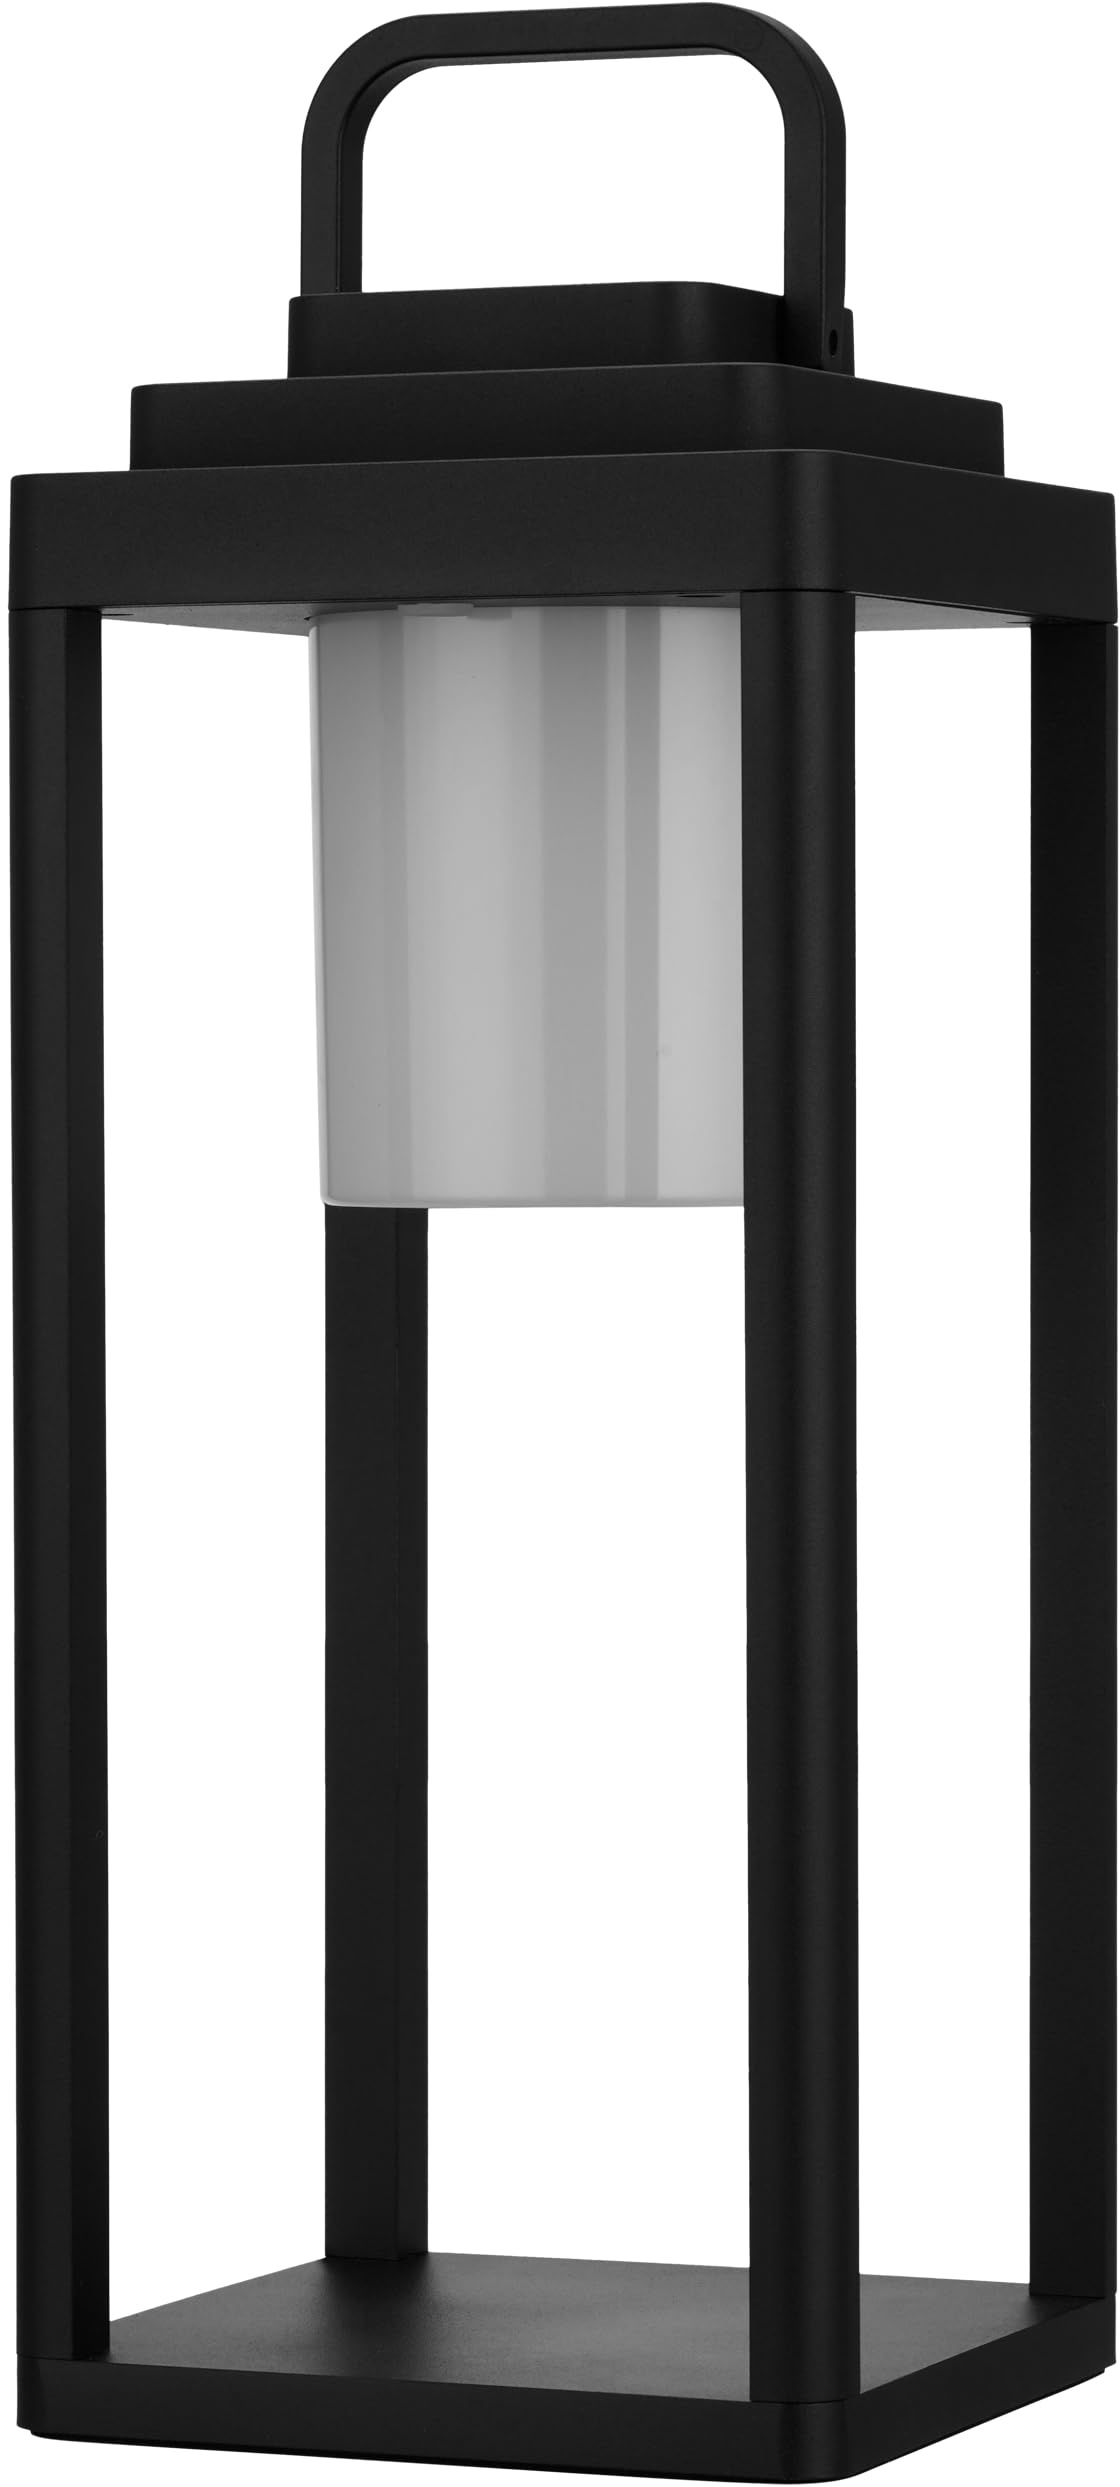 REV LED Lampe - Akku Laterne aus Aluminium, stilvolle Außenlampe mit Dimmfunktion, H:35cm, 160lm, 2W, 4000mAh, IP65, schwarz